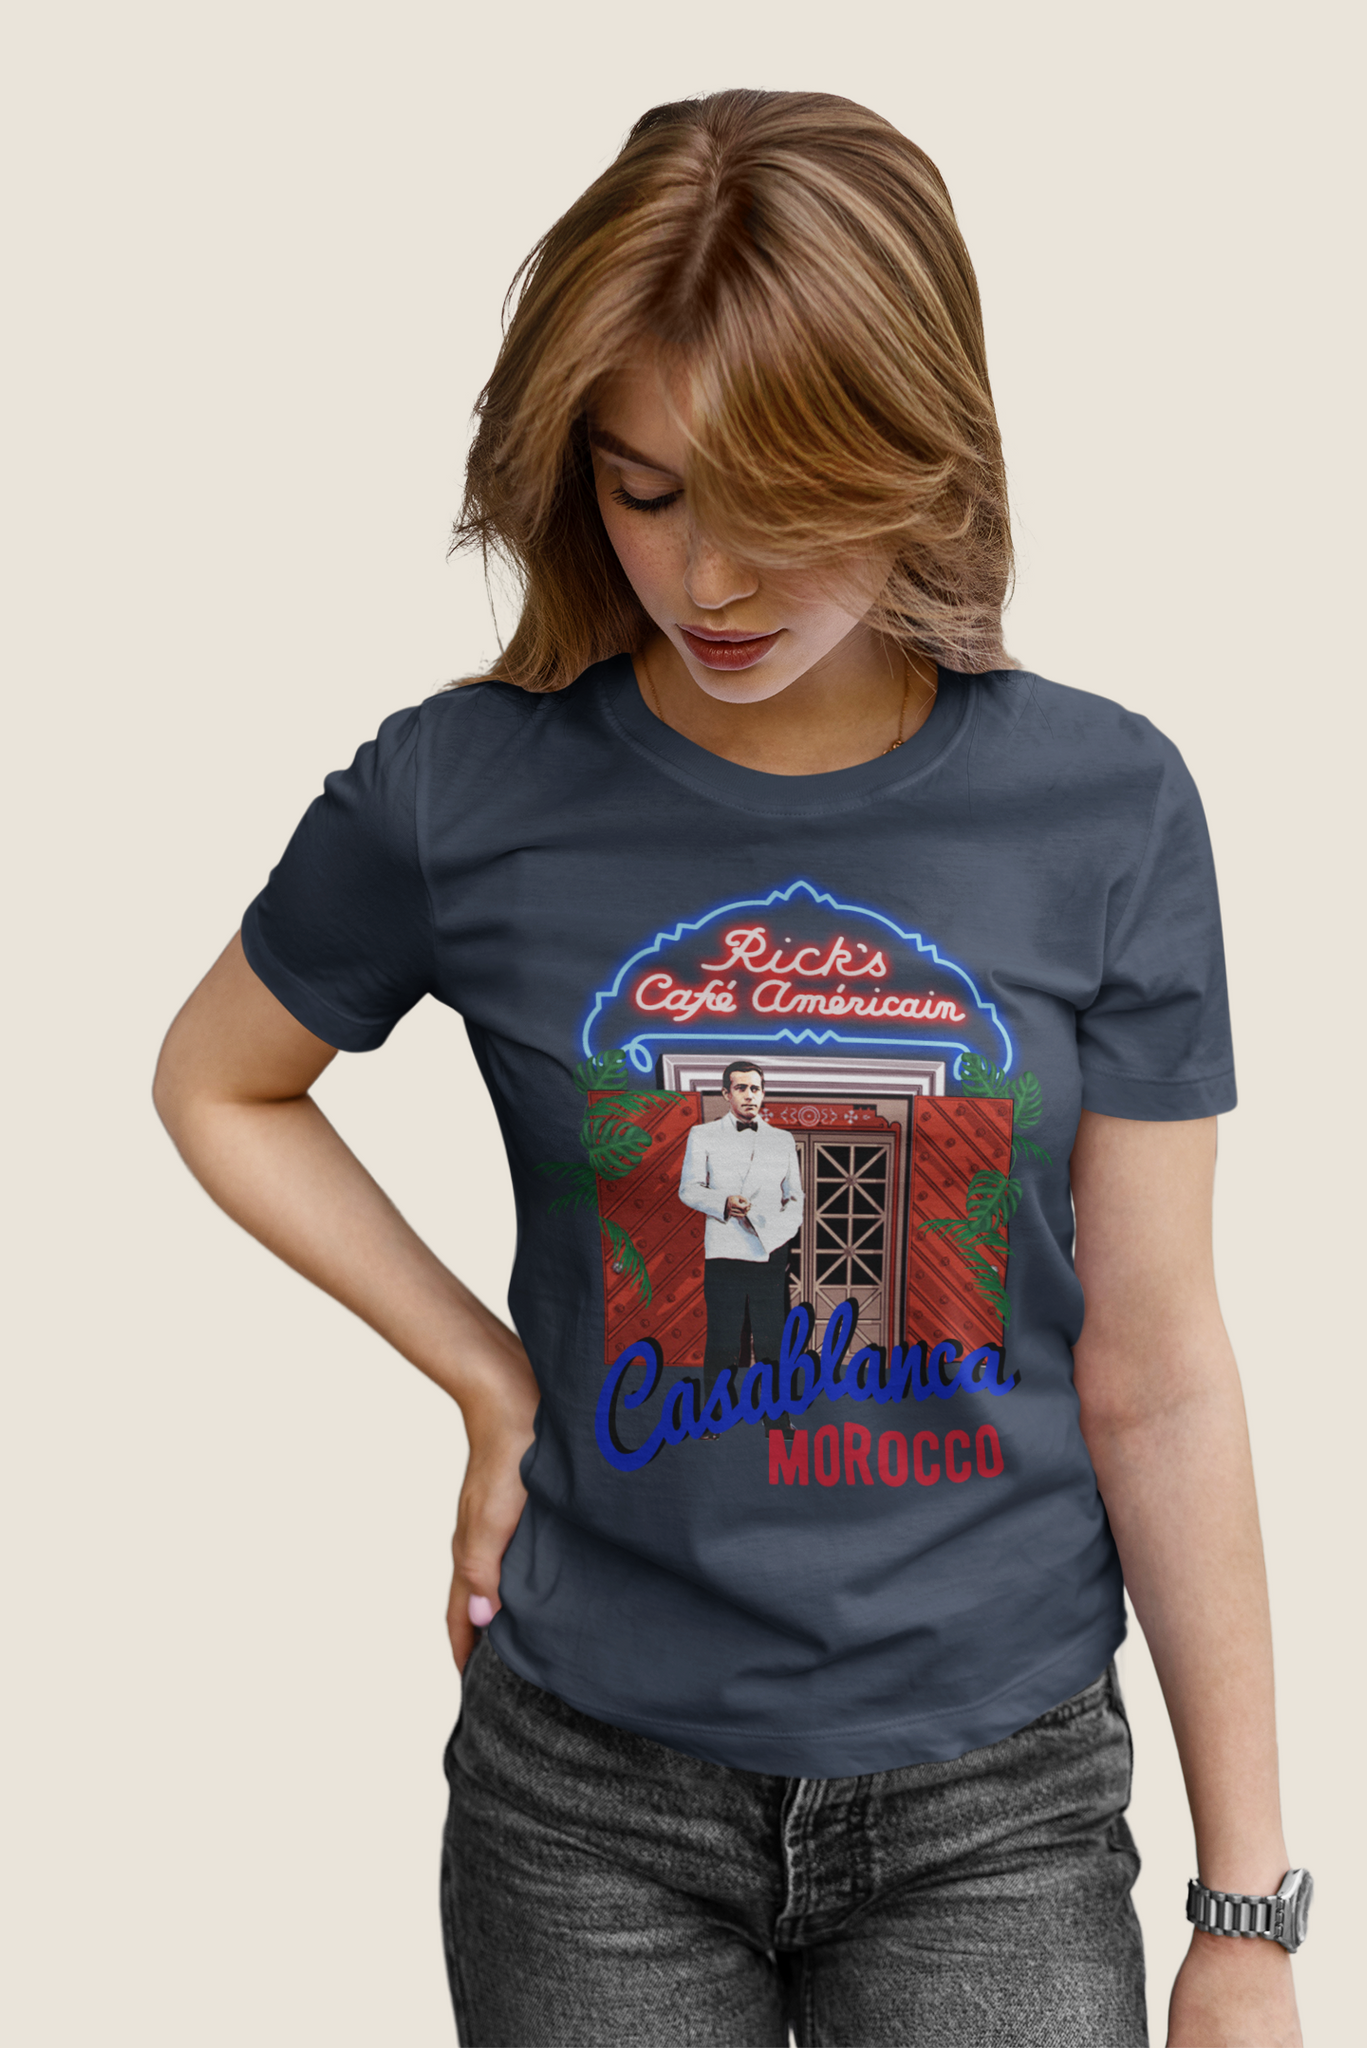 Casablanca T Shirt, Ricks Cafe Americain Shirt, Rick Blaine T Shirt, Casablanca Morocco Tshirt